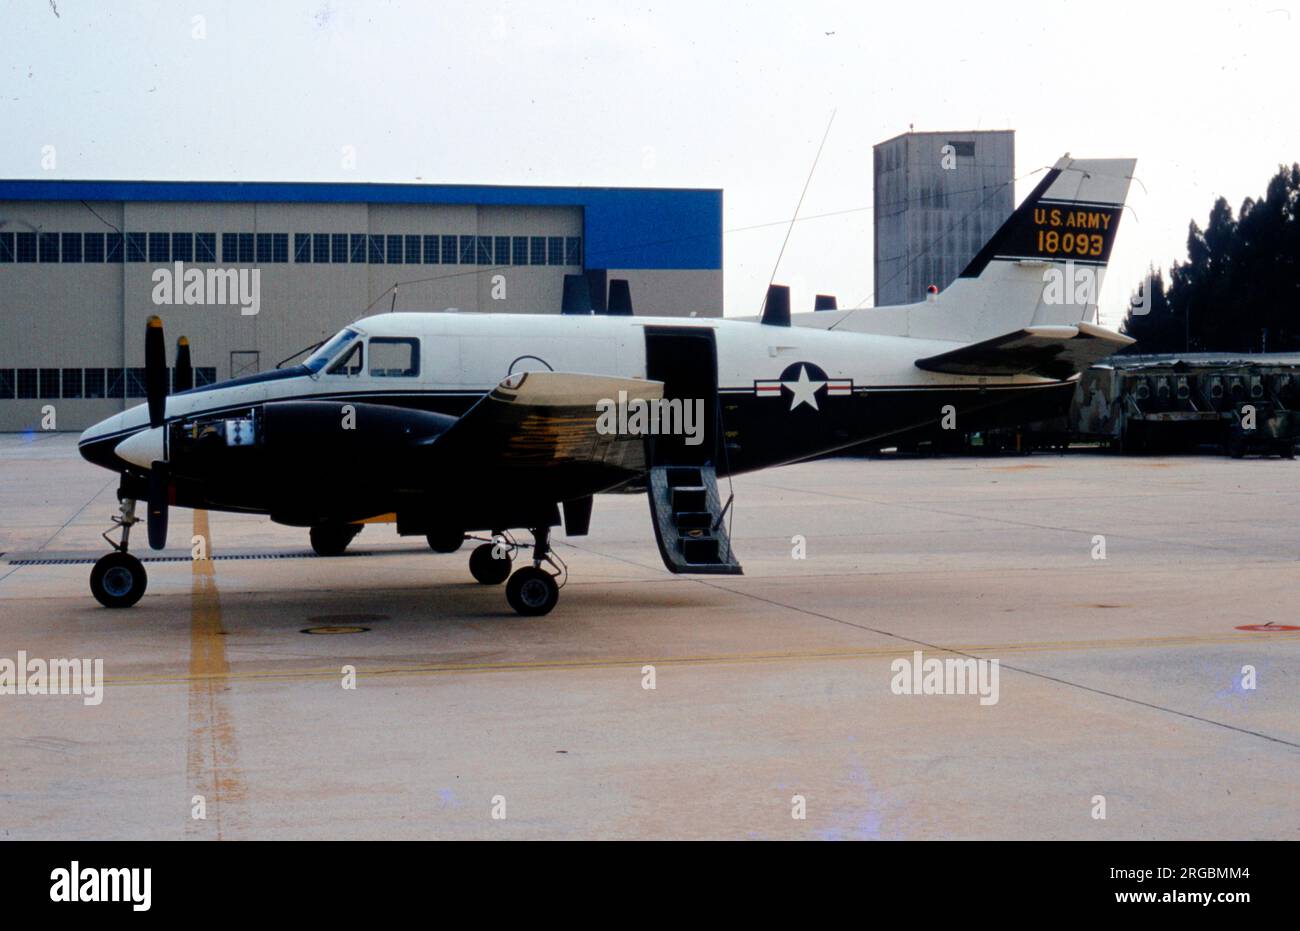 Armée des États-Unis - Beechcraft RU-21B UTE 67-18093 (msn LS-2), l'avion d'interception et de contrôle du « leader du CEFiRM ». Affecté à la compagnie de l'Agence de sécurité de l'Armée de terre (Aviation) 138th. Banque D'Images